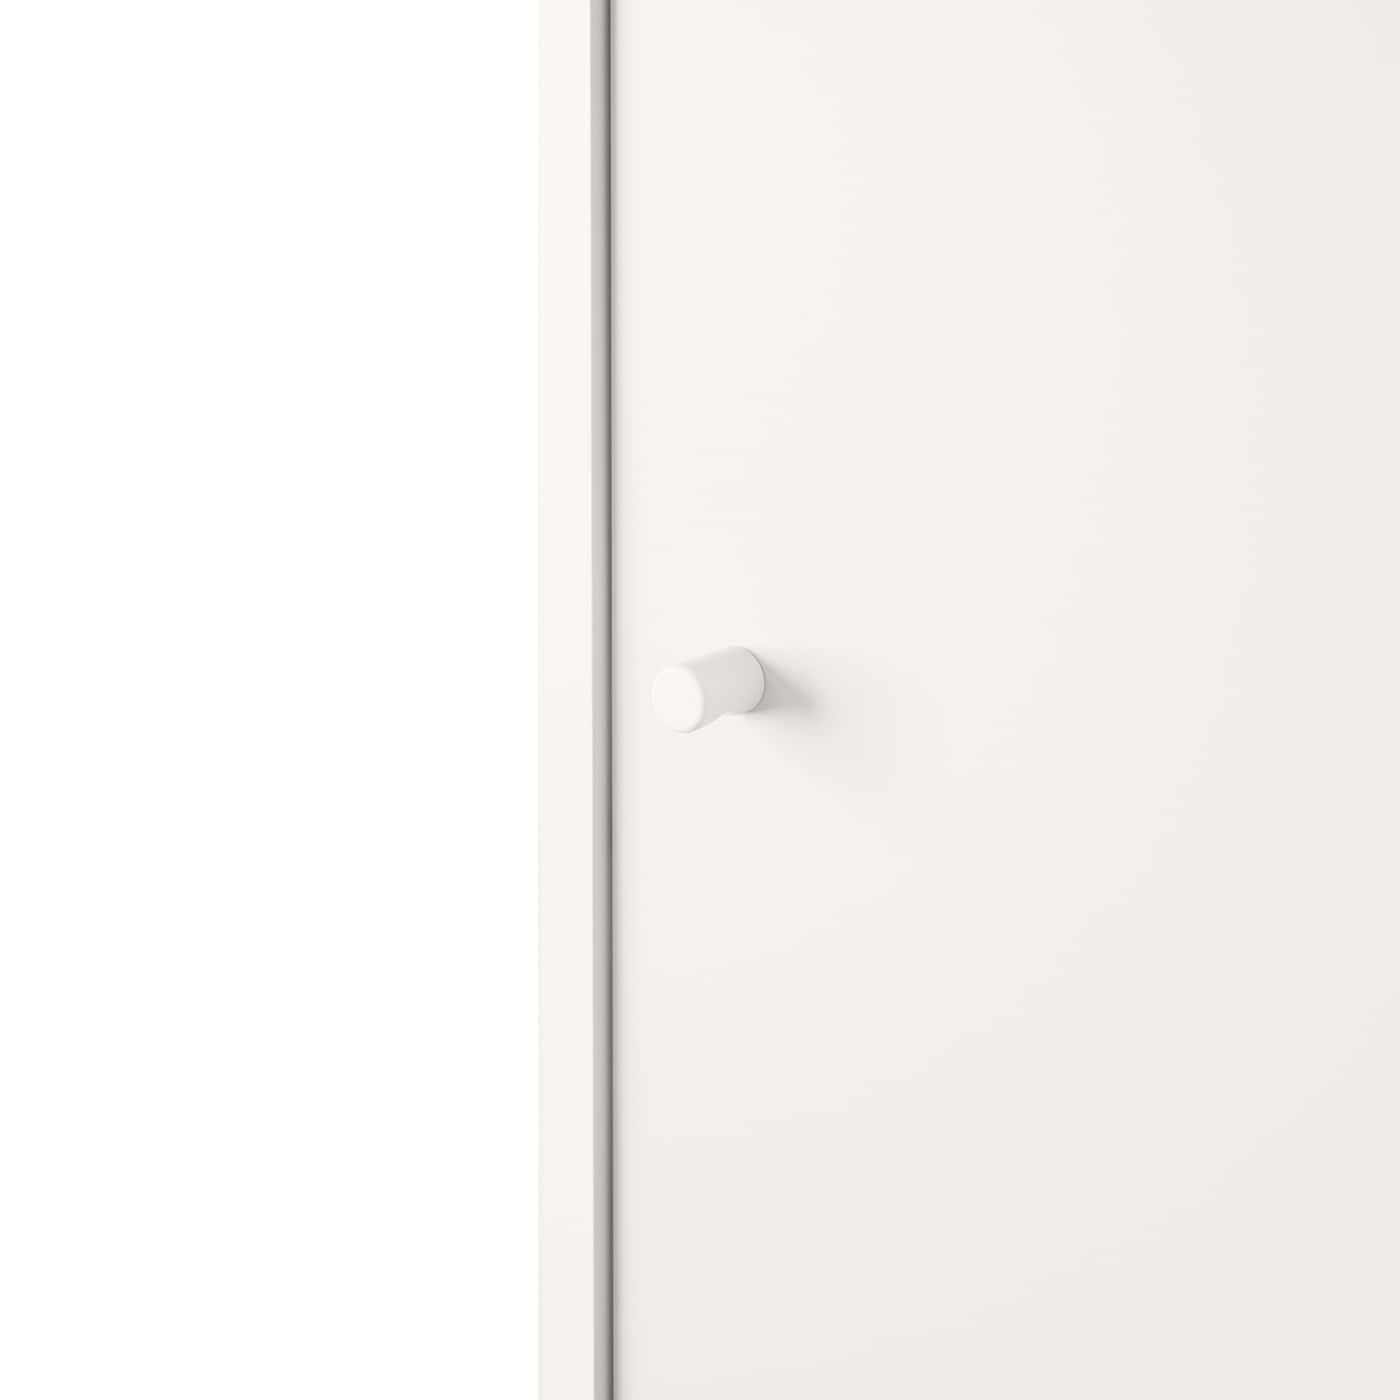 KLEPPSTAD衣柜与滑动门,白色,117 x176厘米